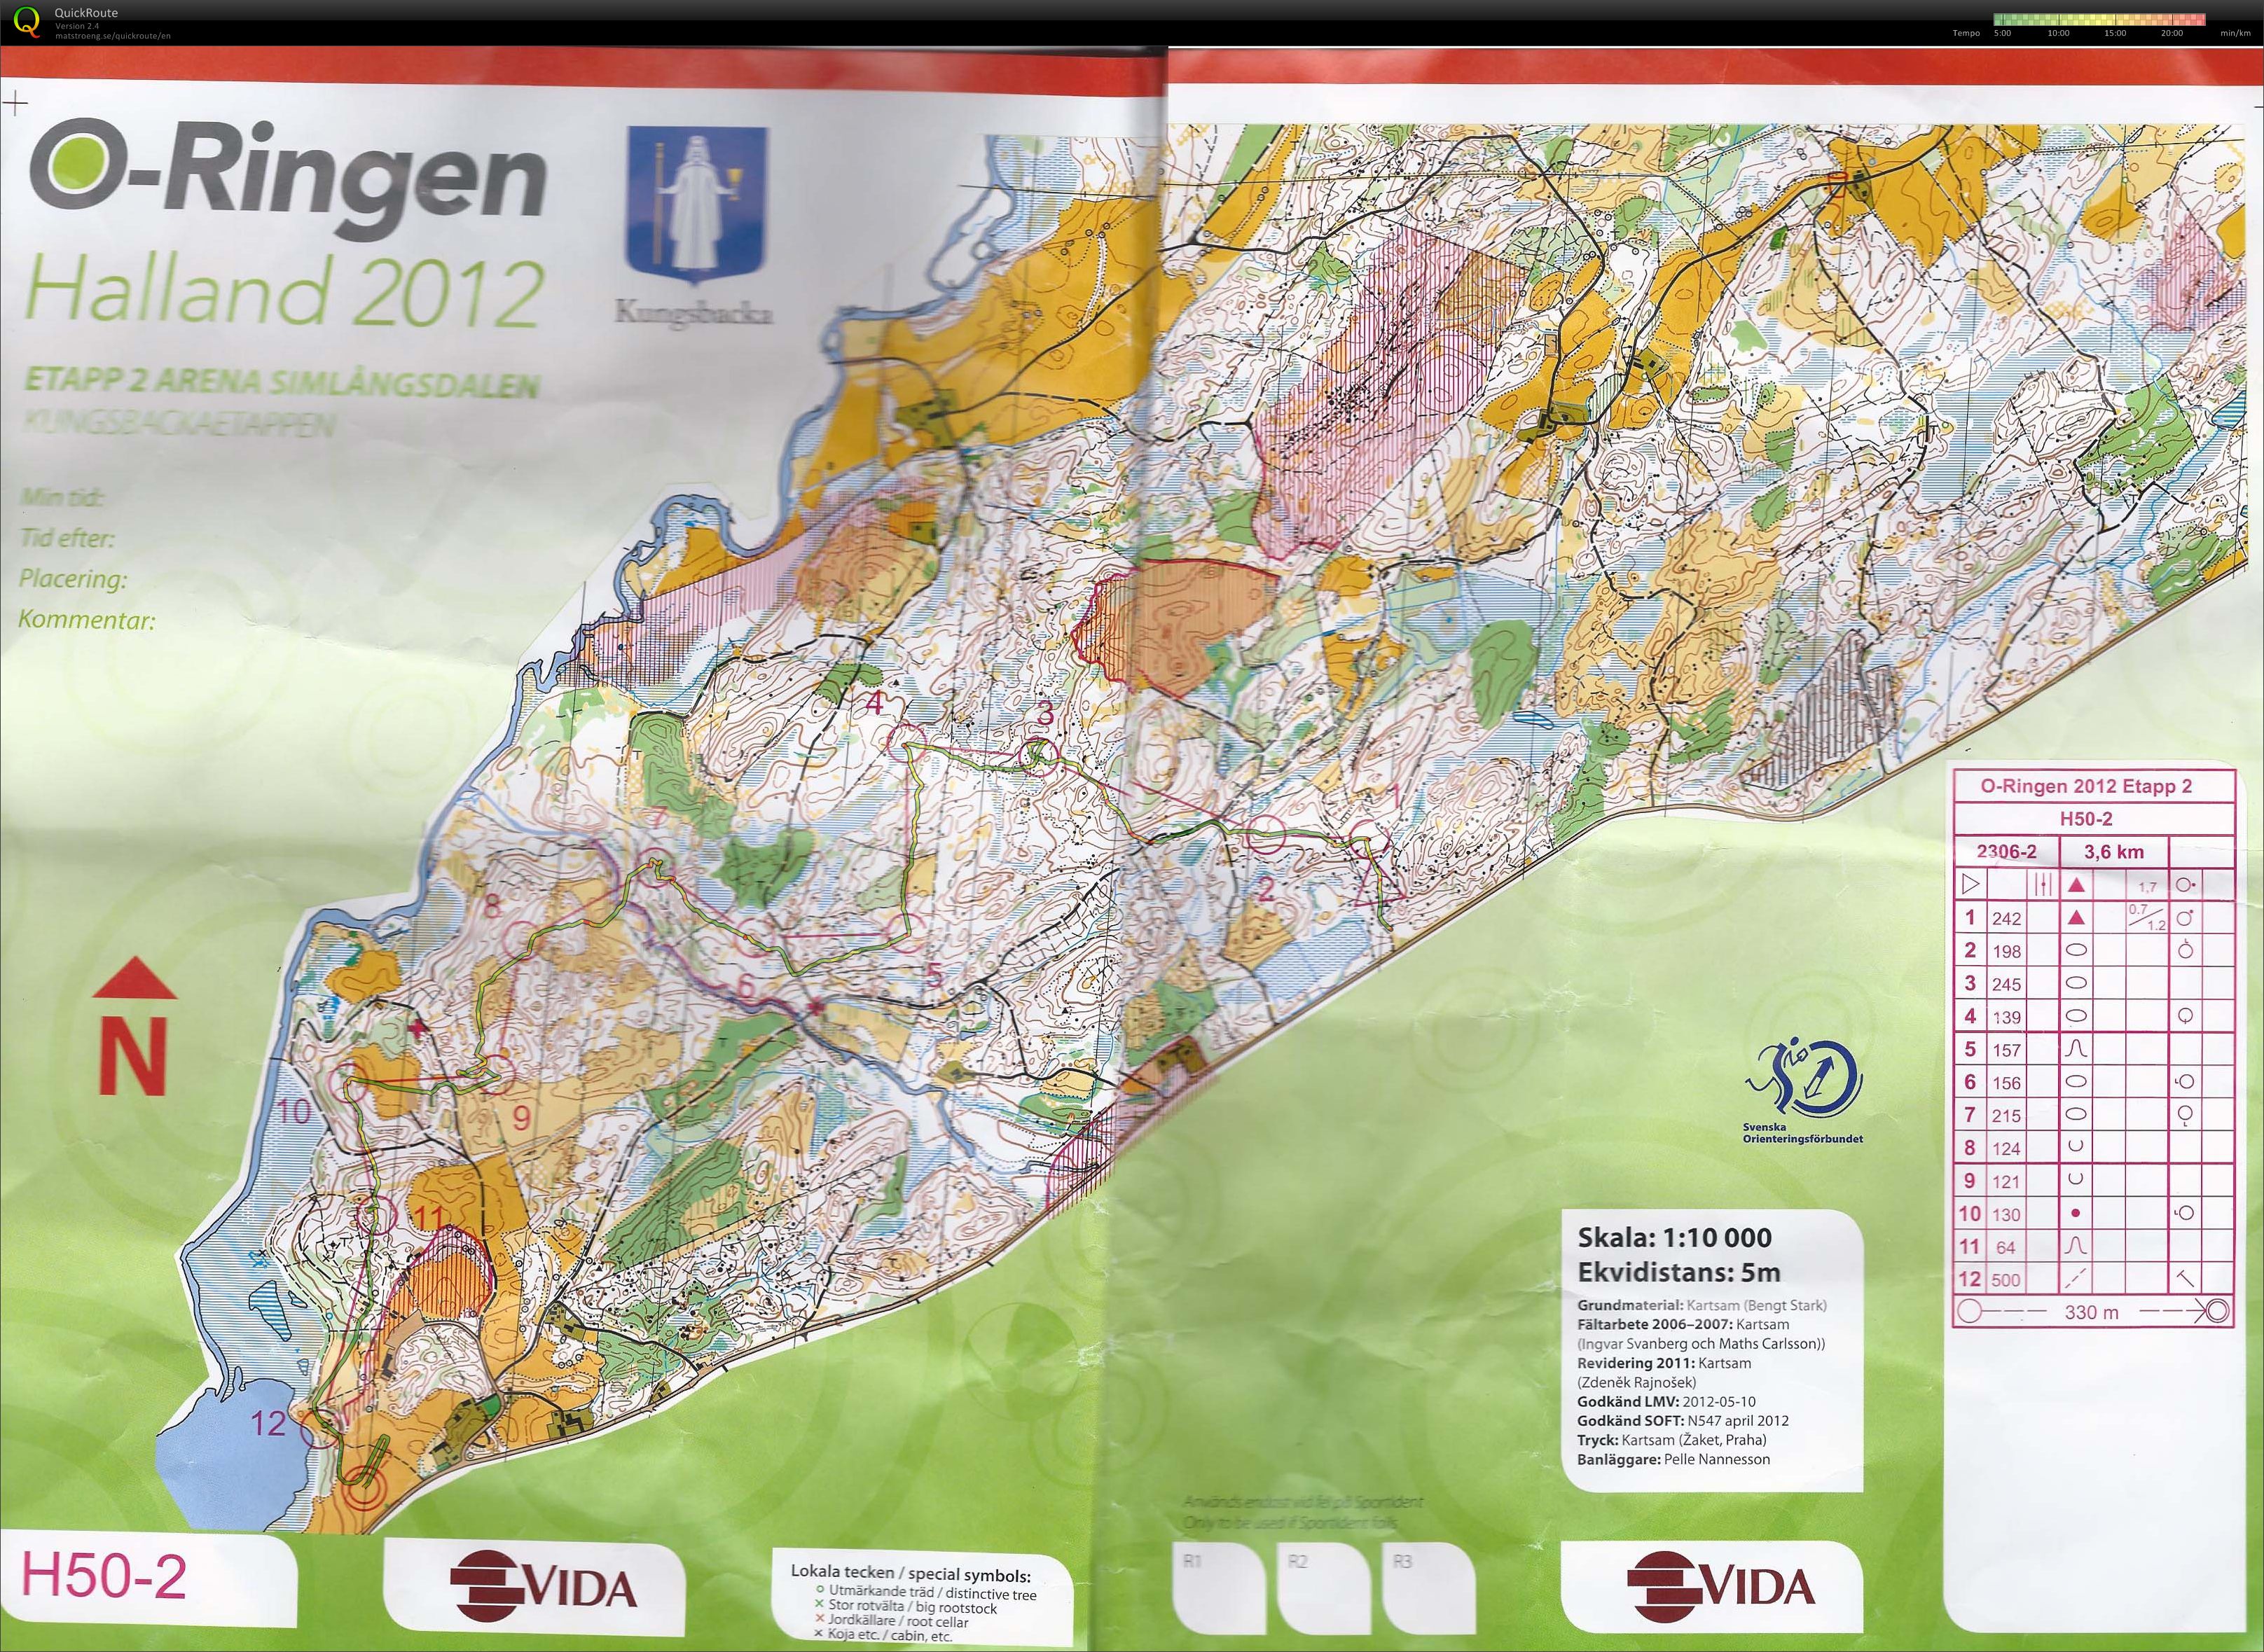 O-ringen 2012 2 etape (23/07/2012)